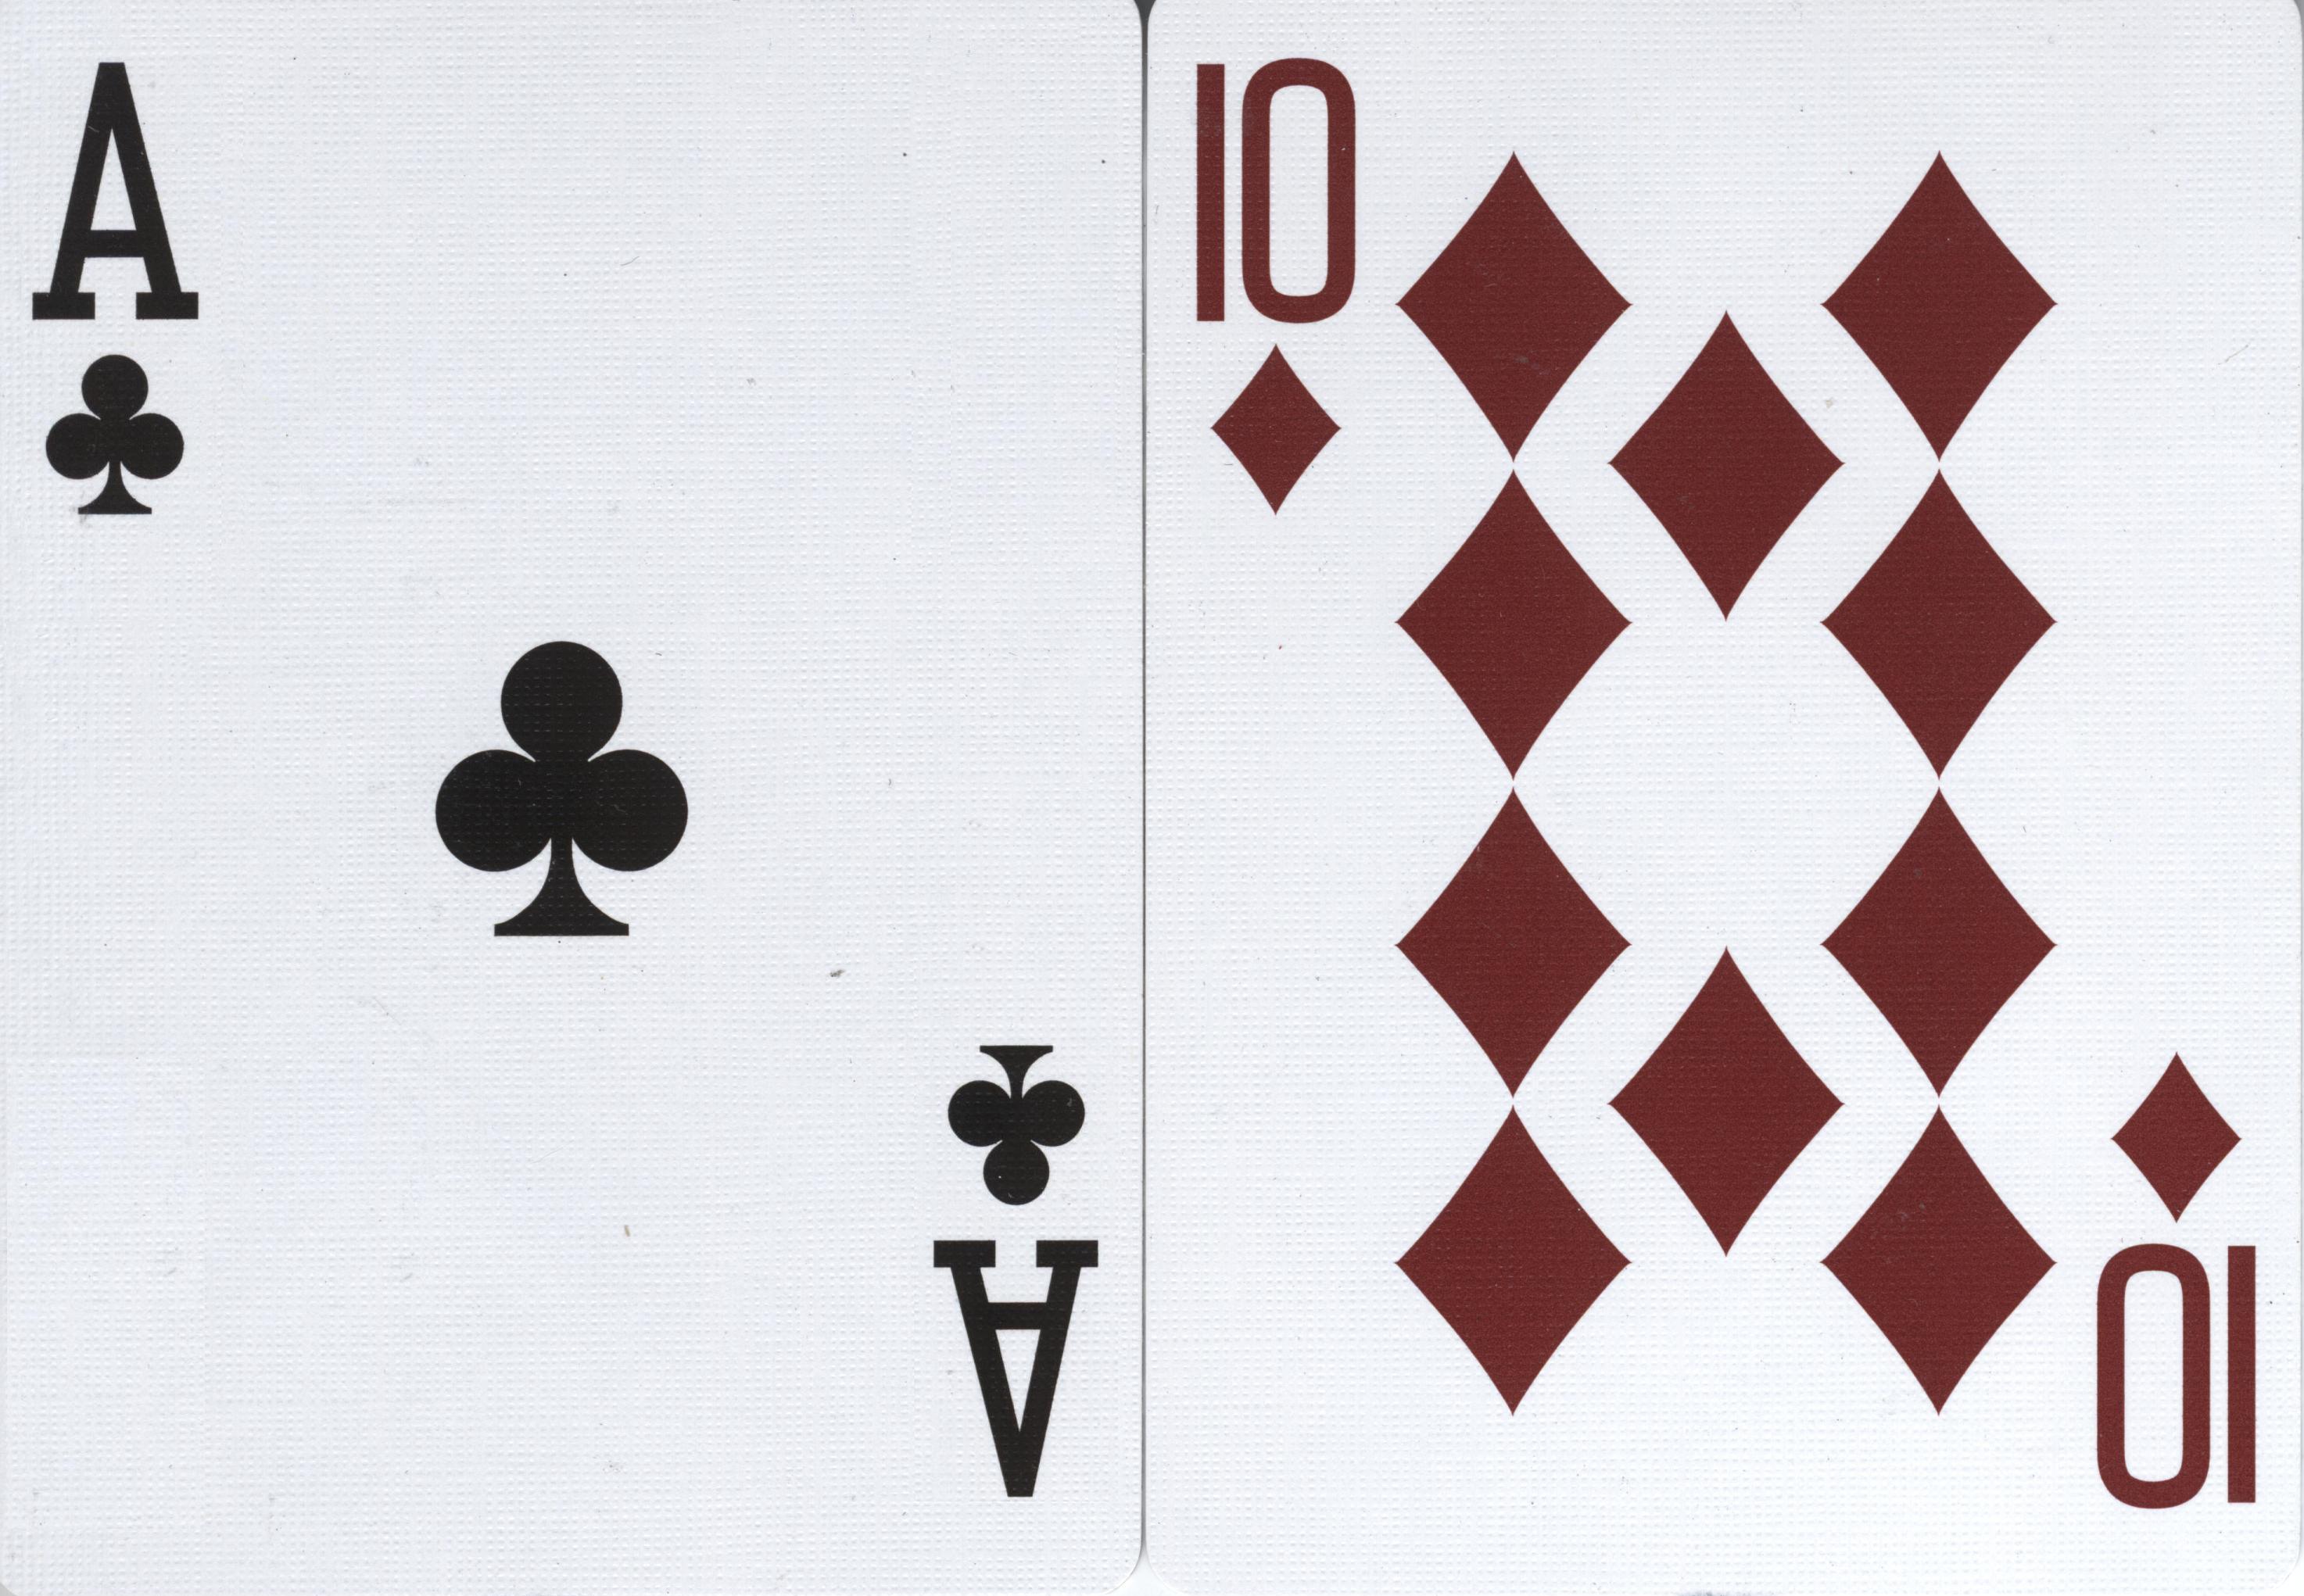 Um exemplo de blackjack, que consiste em um ás e uma carta de valor 10